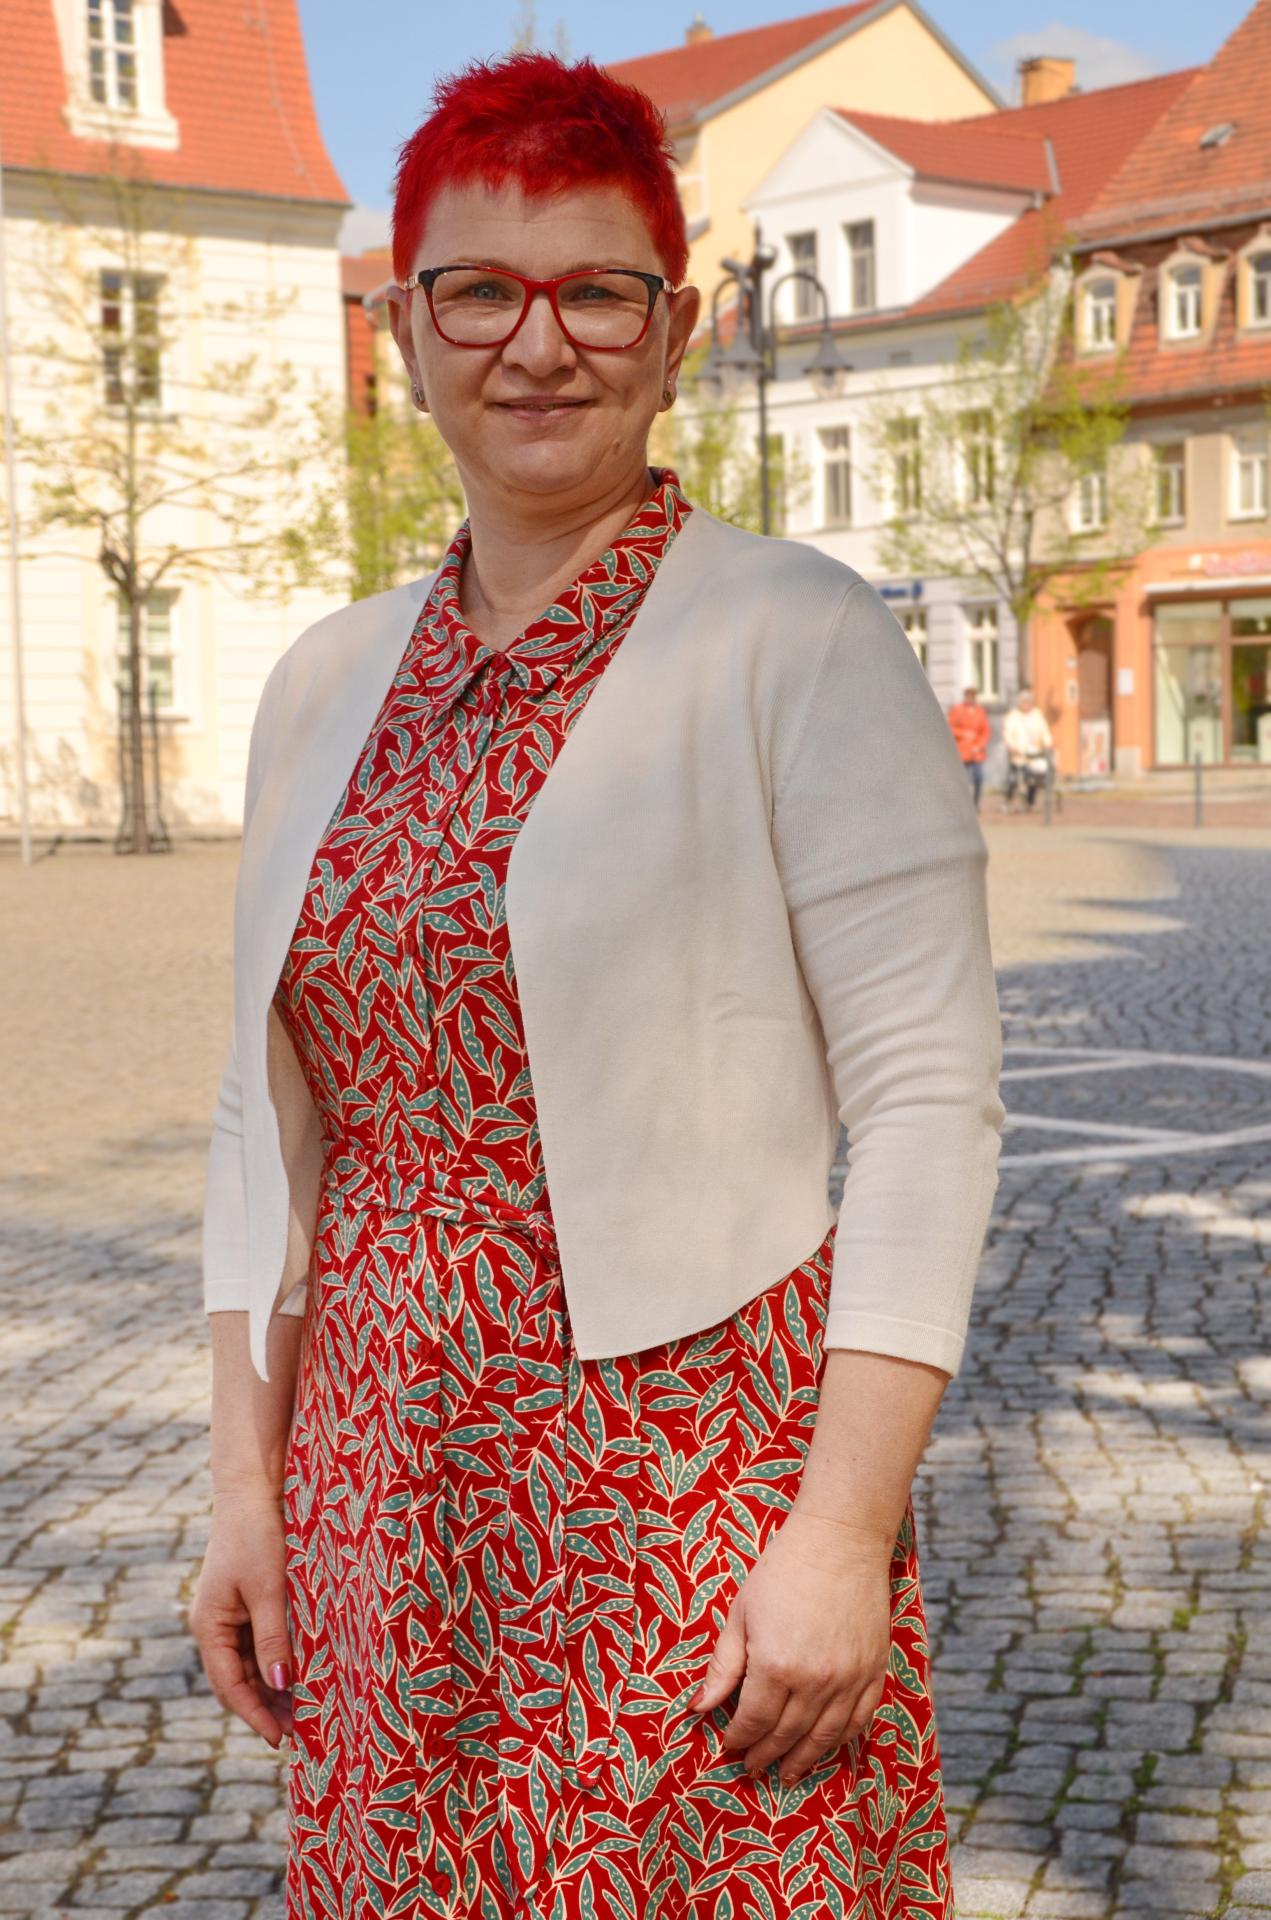 Verbandsgemeindebürgermeisterin Claudia Sieber - Bild öffnet sich in vergrößerter Ansicht